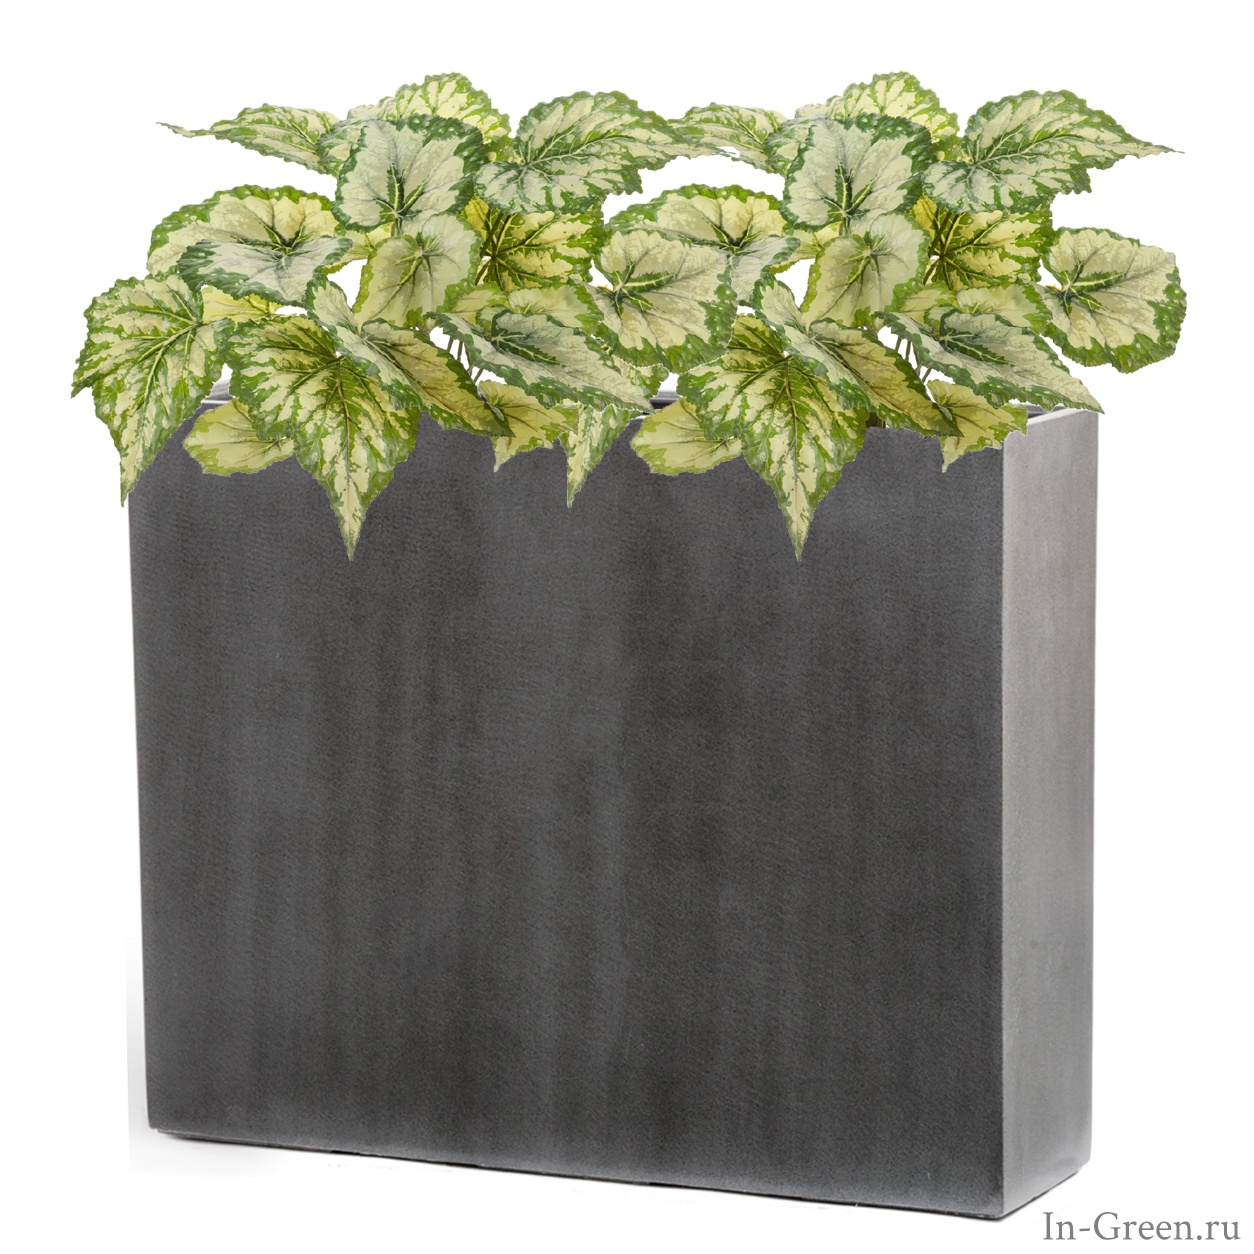 Бегония светло-зеленая крупнолистная (sensitive botanic) в высоком кашпо тёмно-серый бетон | 110 см